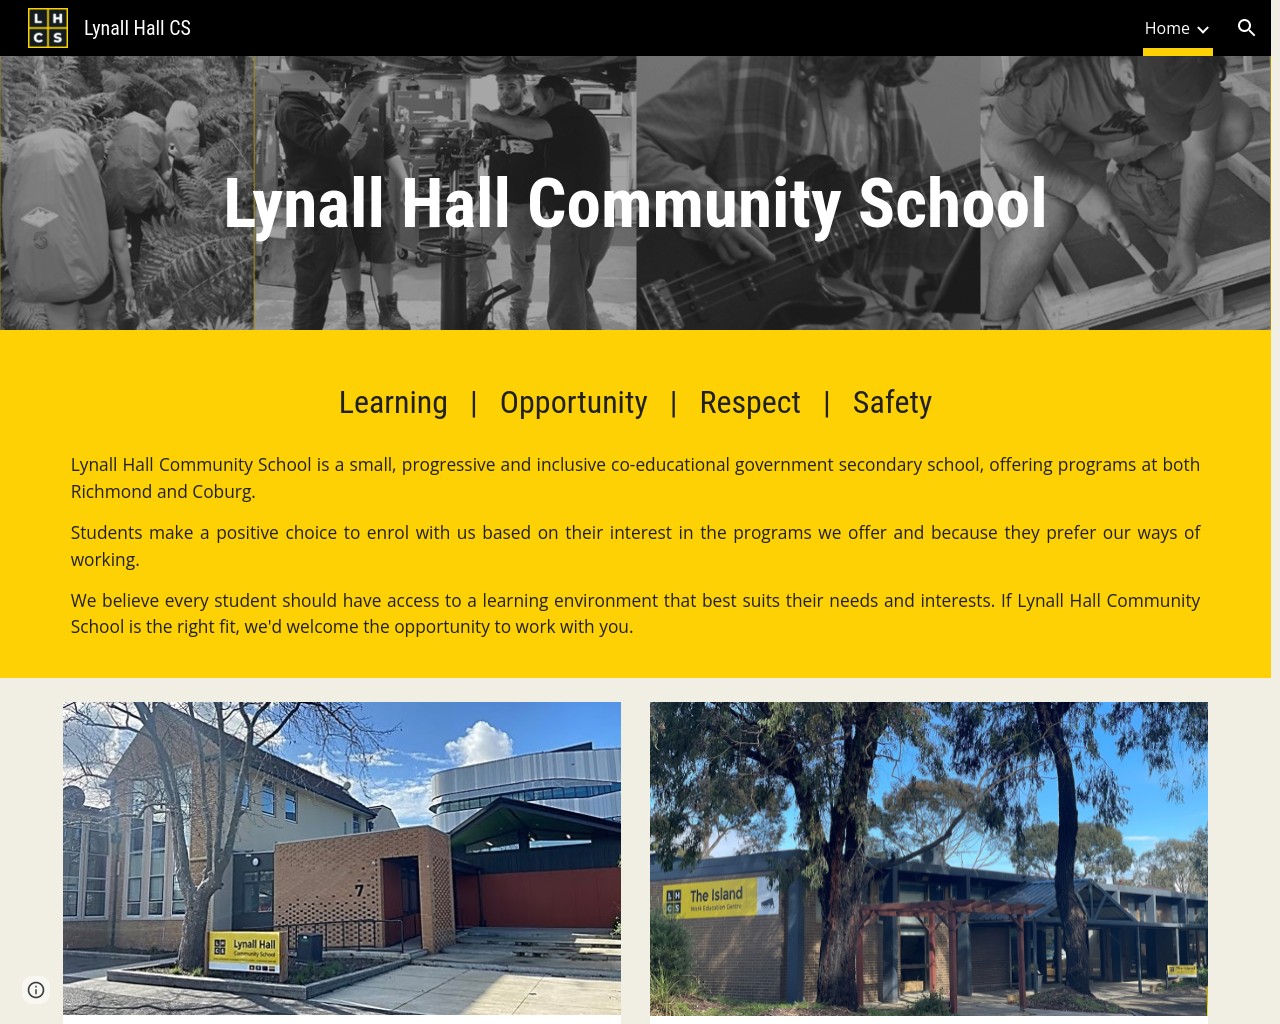 Lynall Hall Community School